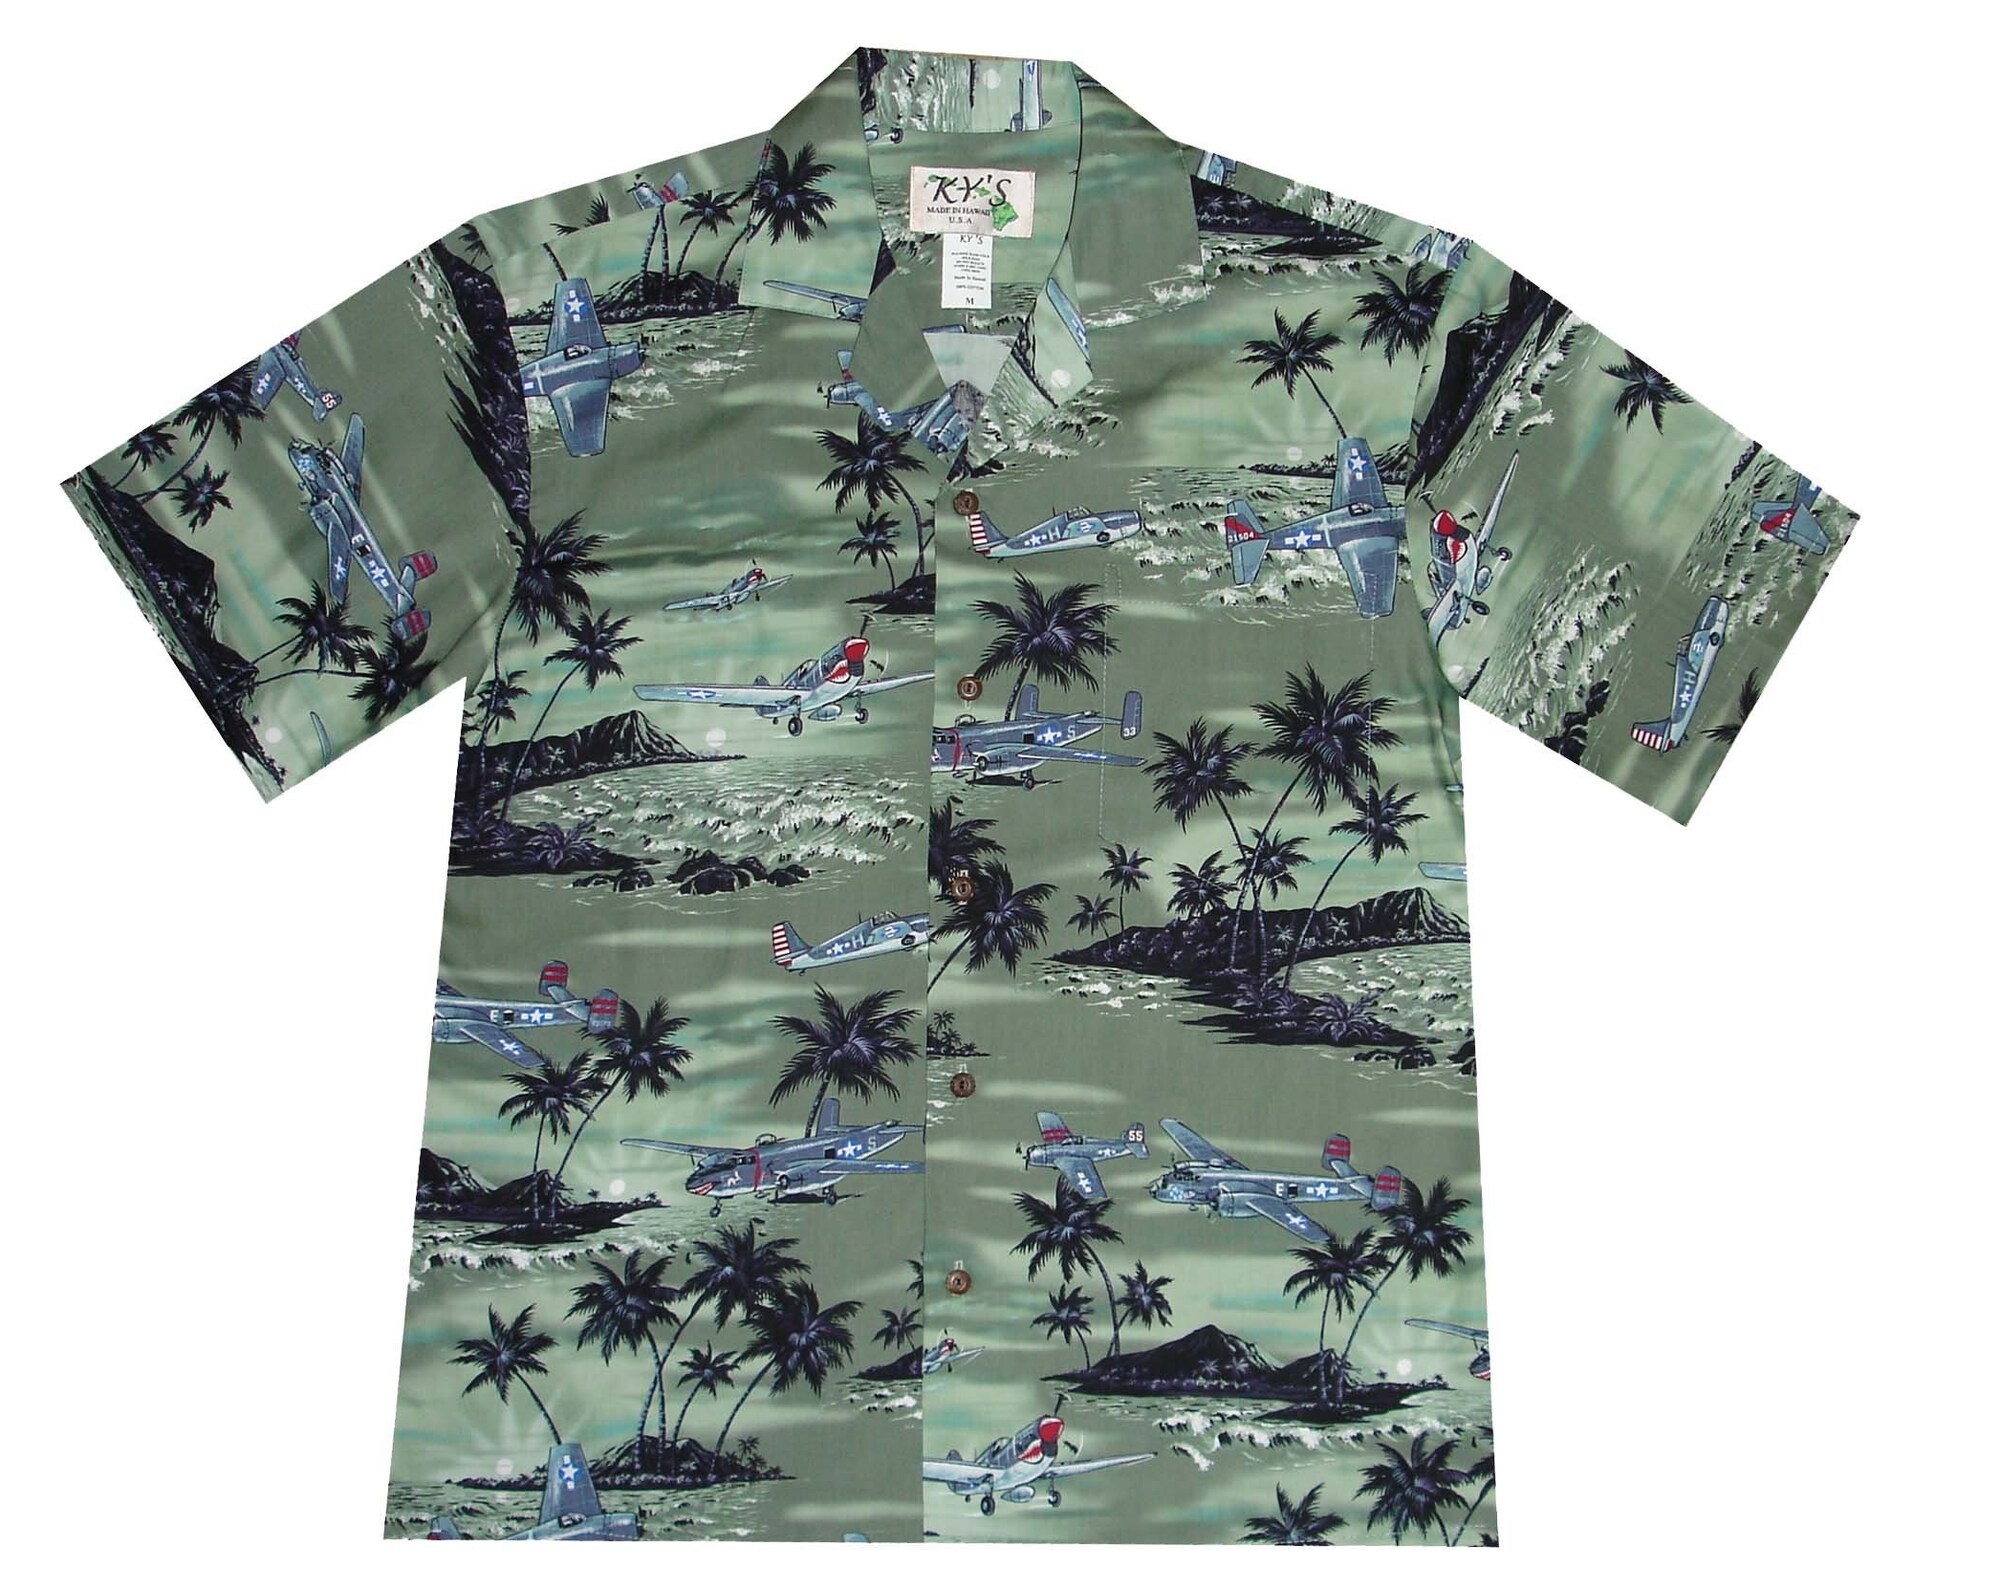 Planes Pearl Harbor Hawaiian Shirt